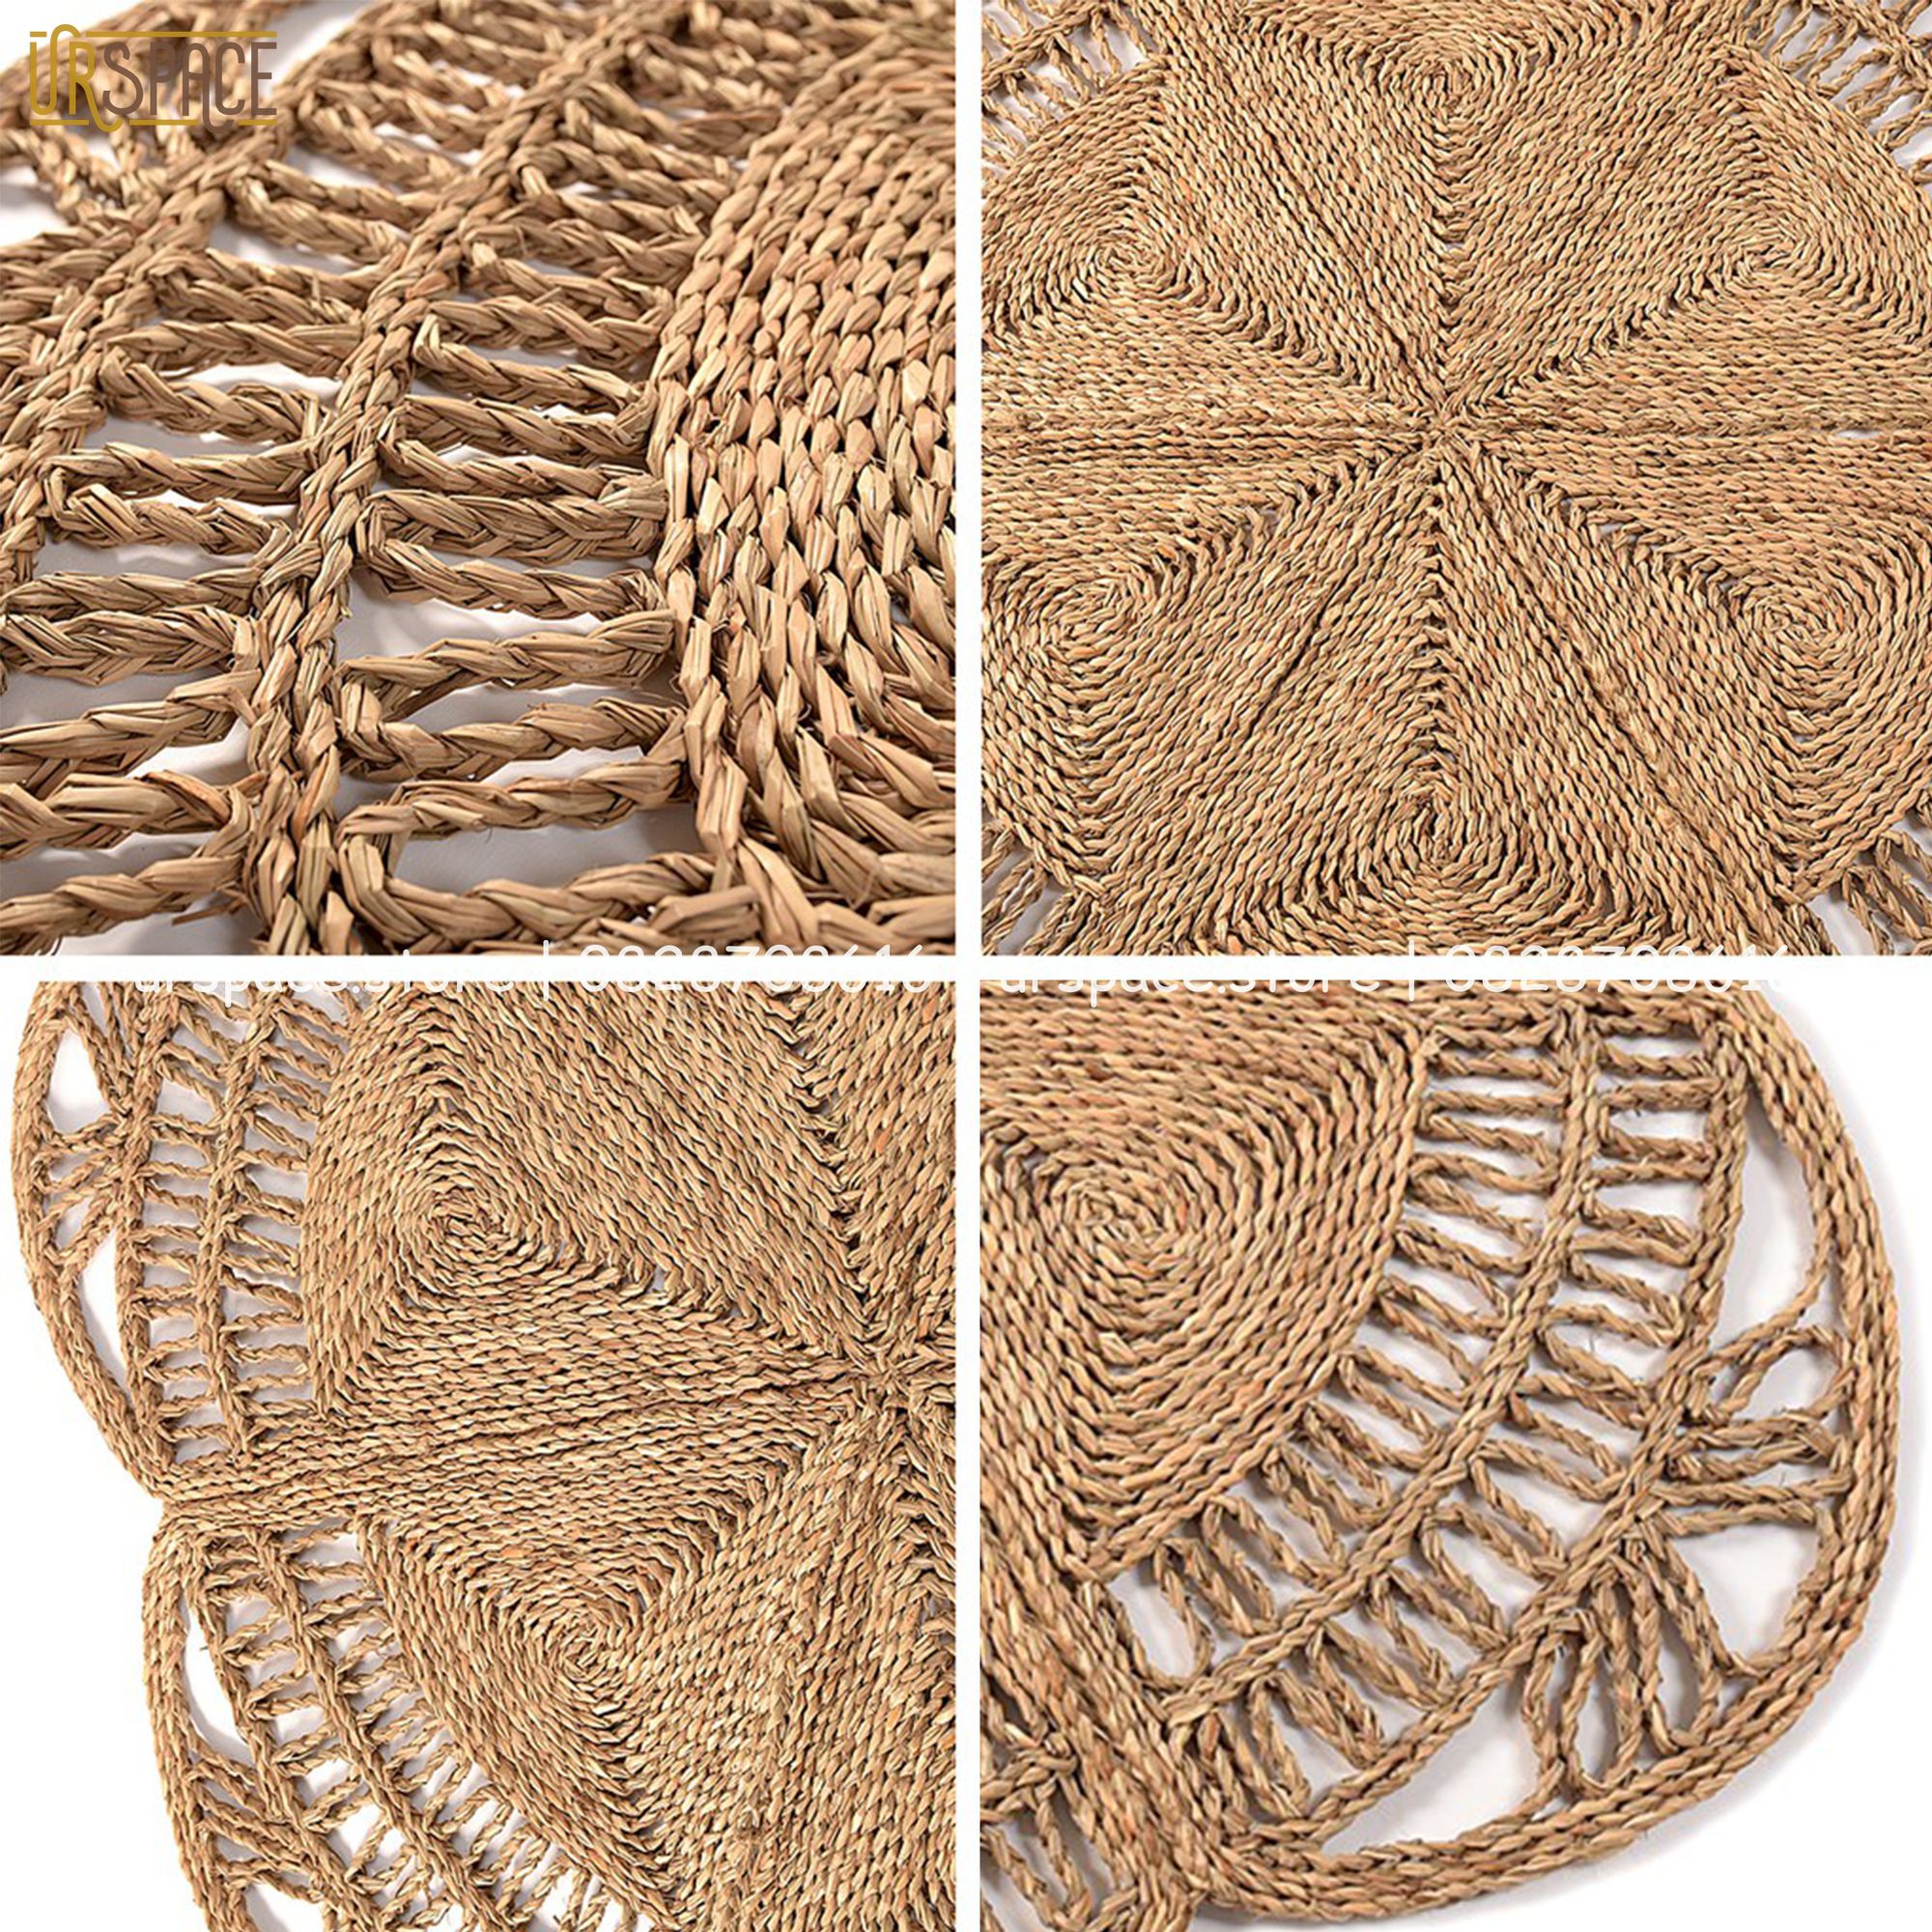 Thảm trải sàn bằng cói hình tròn đường kính 150 cm/ Hand-woven seagrass round rugs for living room